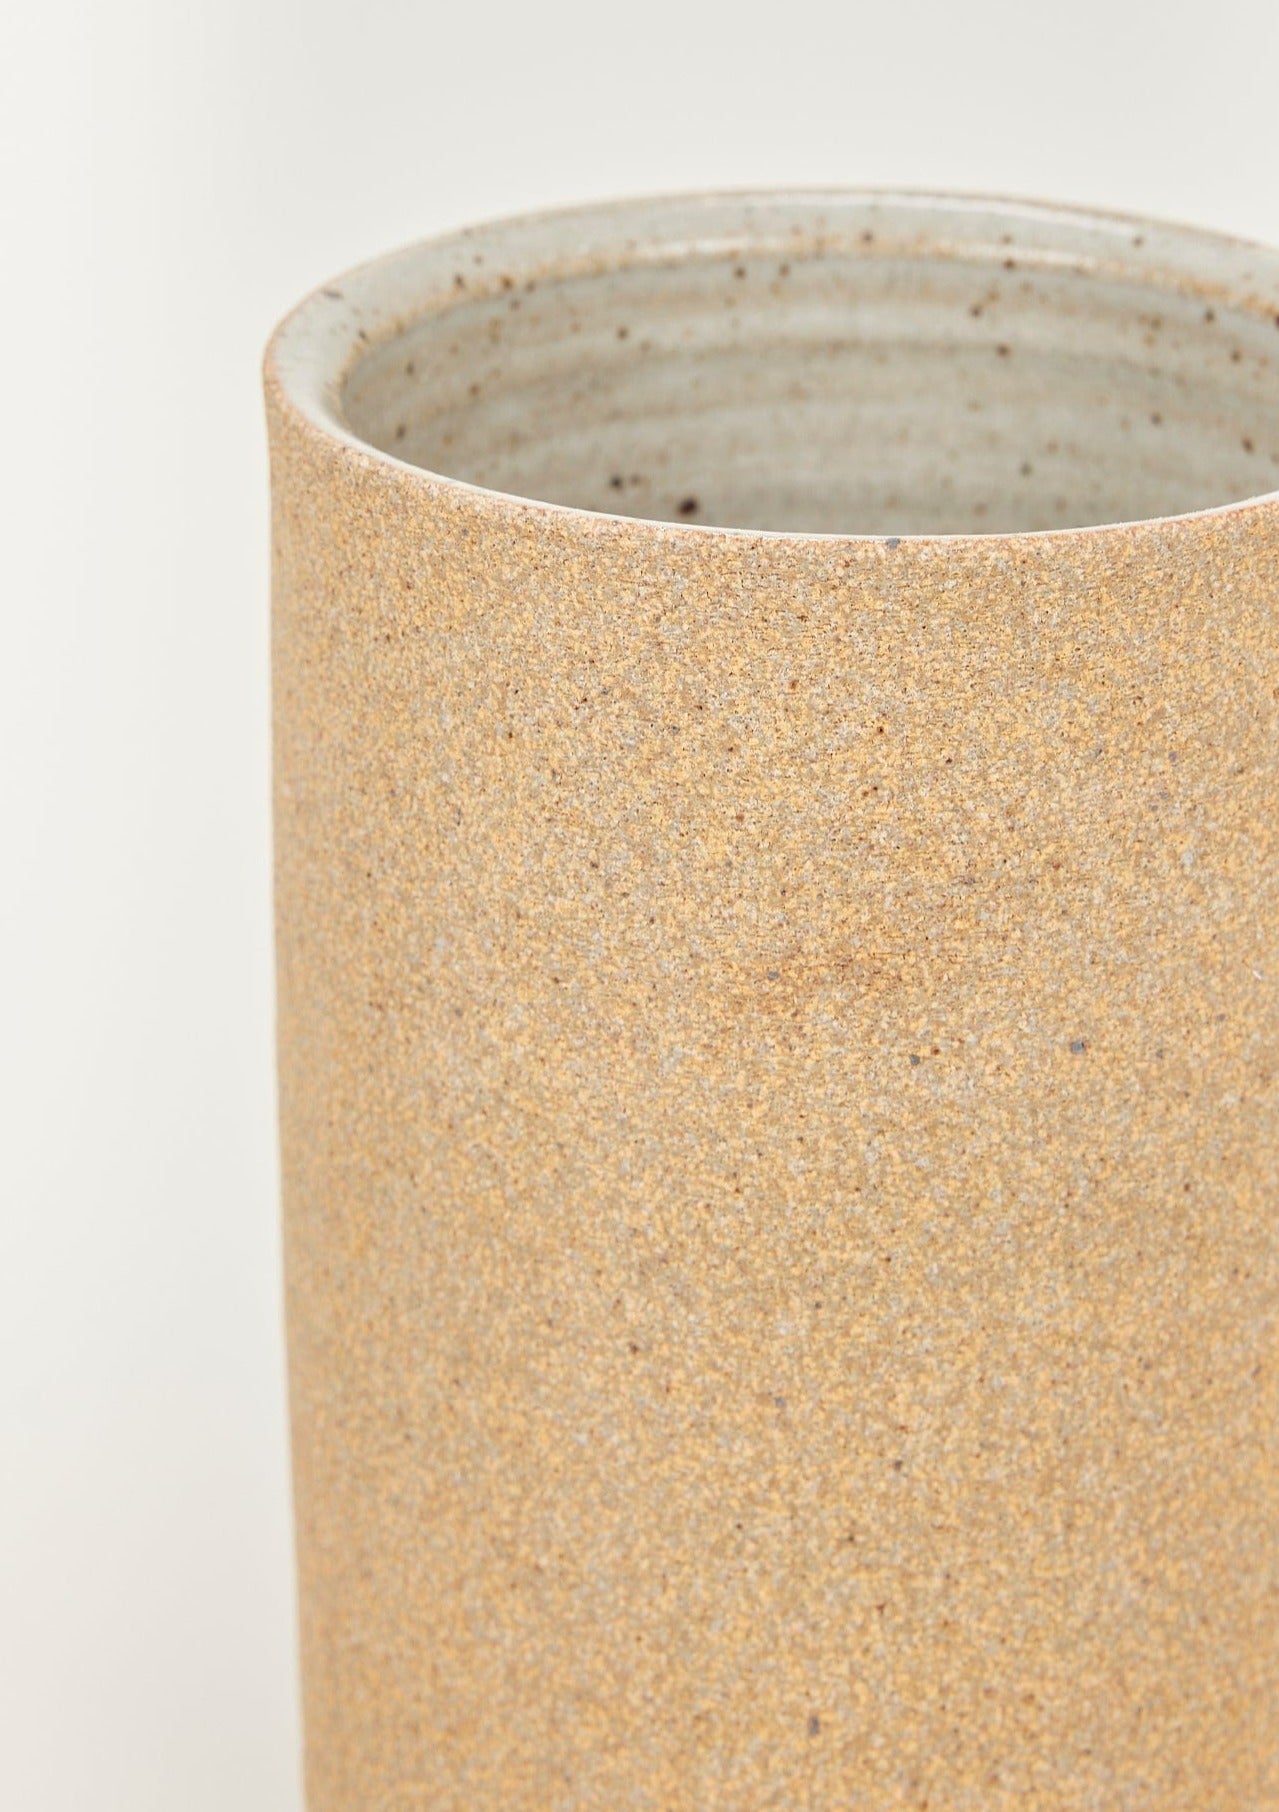 Afloral Handcrafted Vases Sand Clay Cylinder Vase